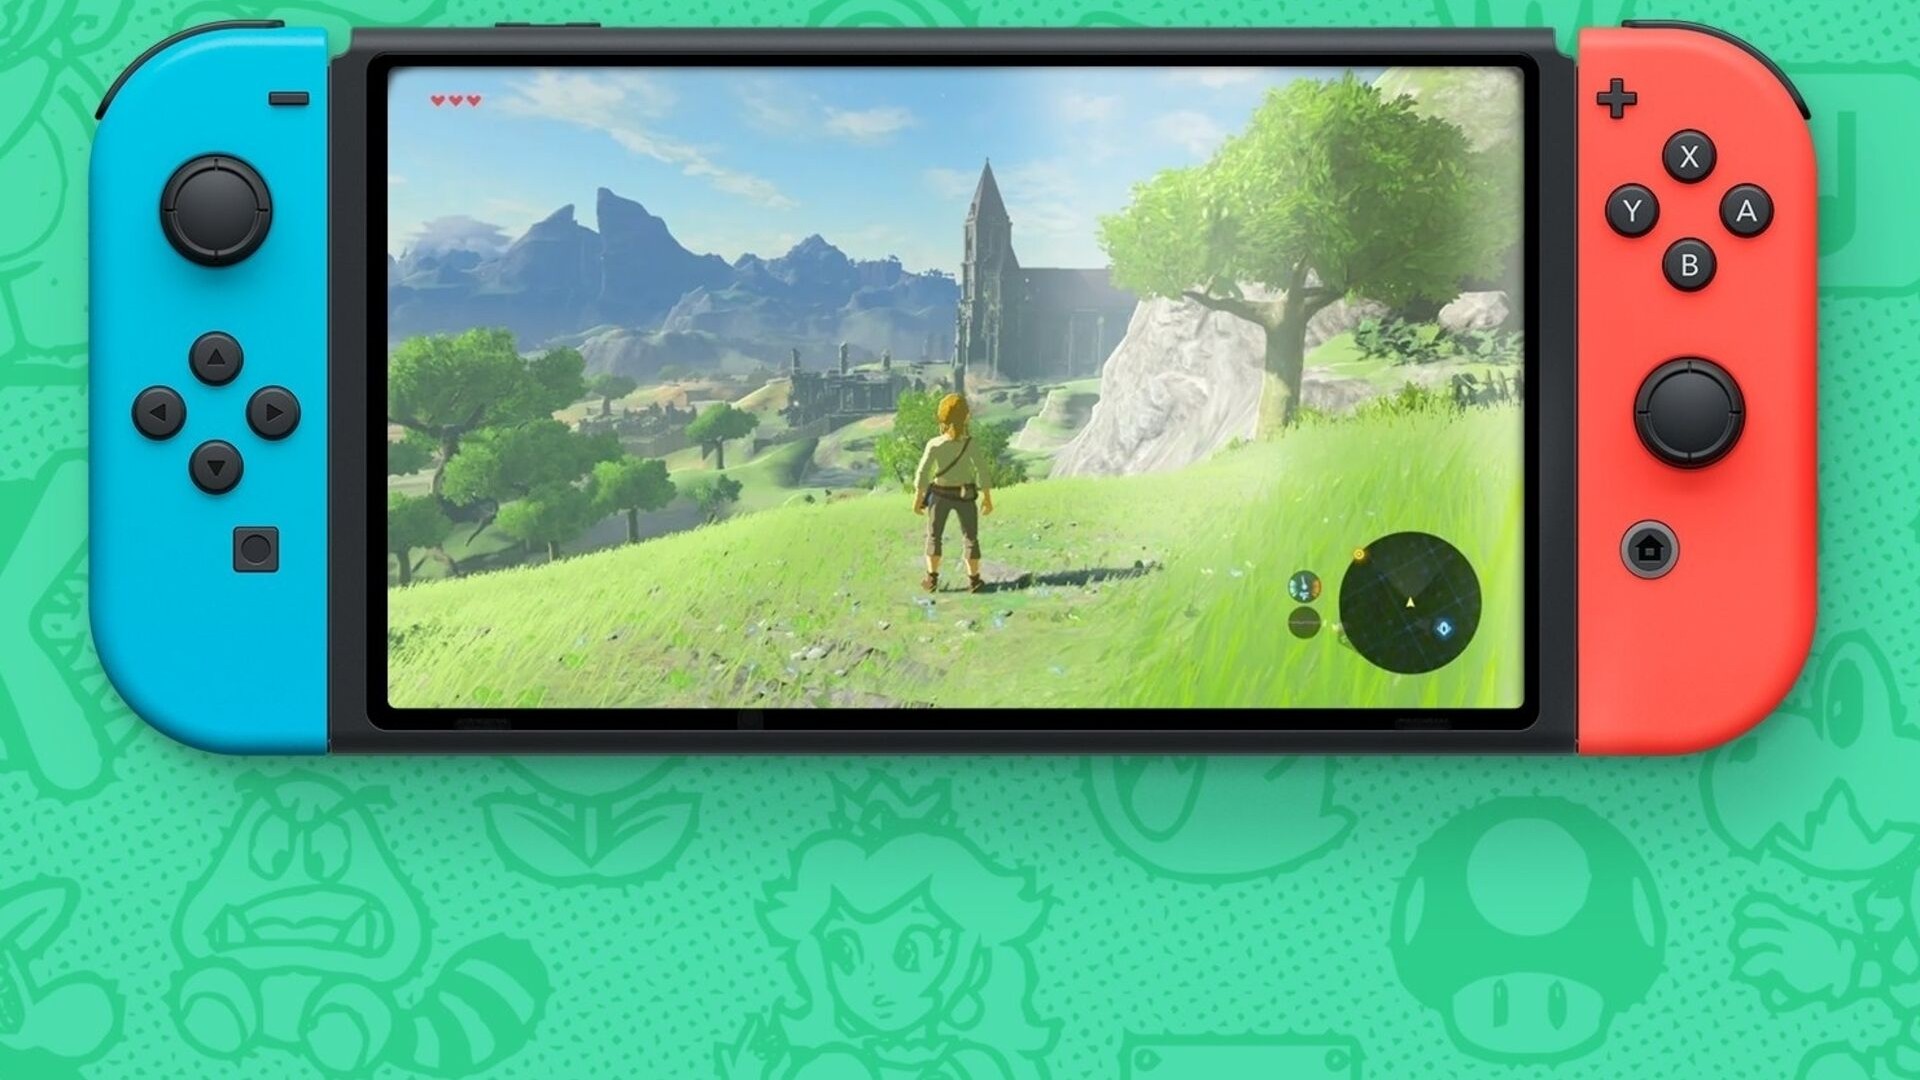 Nintendo Switch 2 pode ter nova janela de estreia em 2024